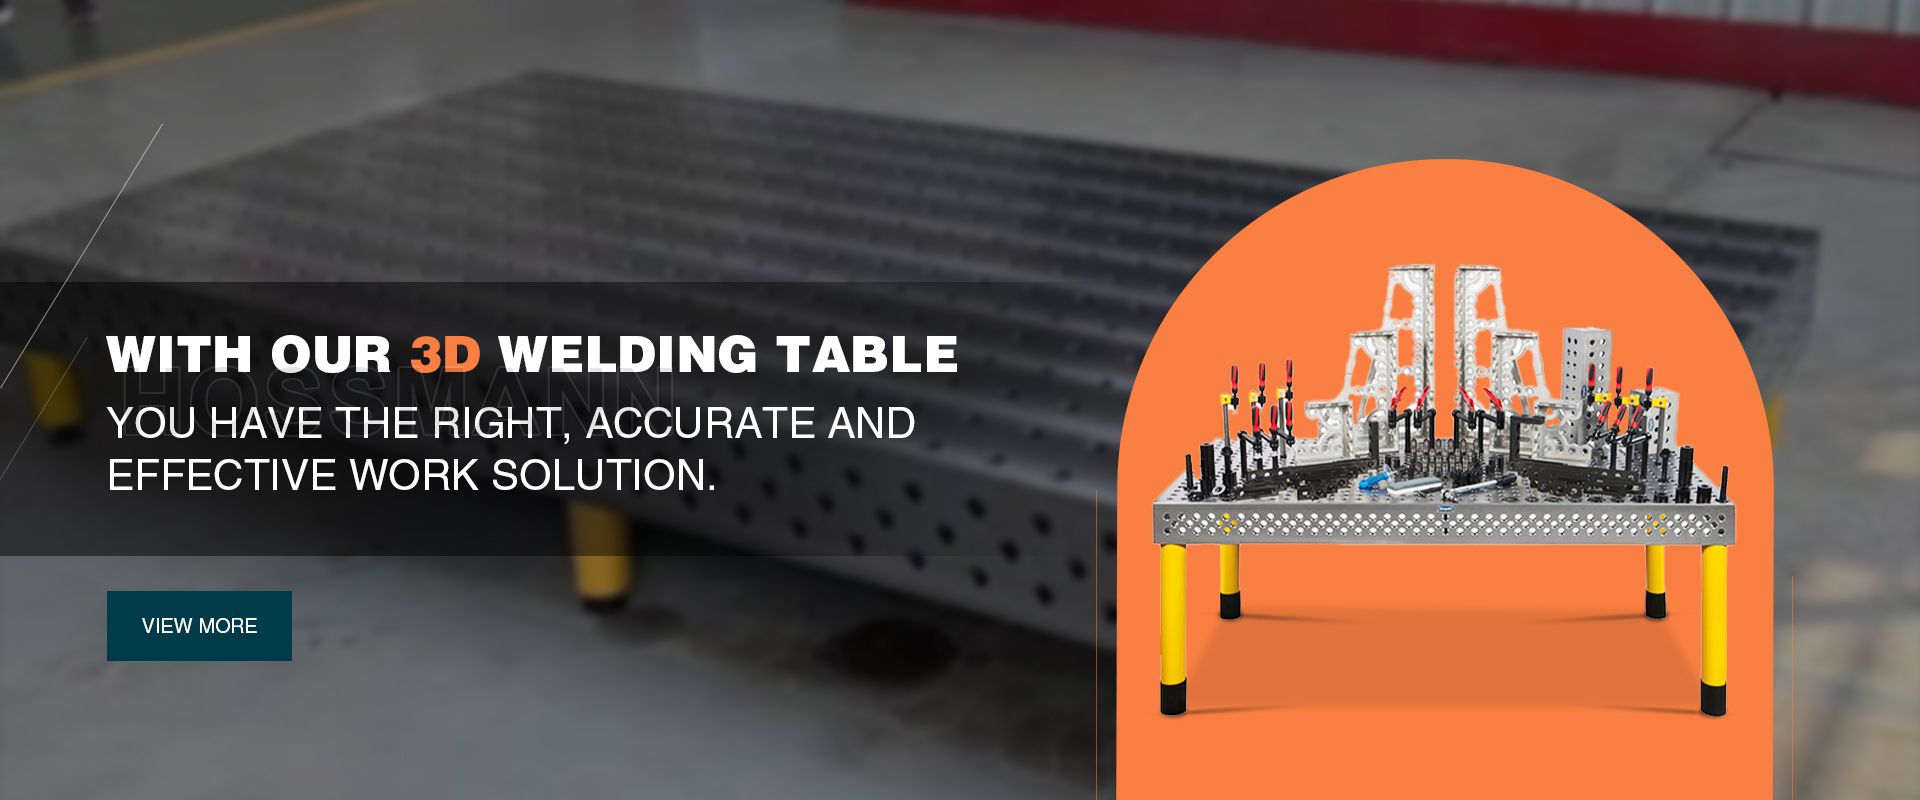 3D Welding Table For Pipe Welding Practice